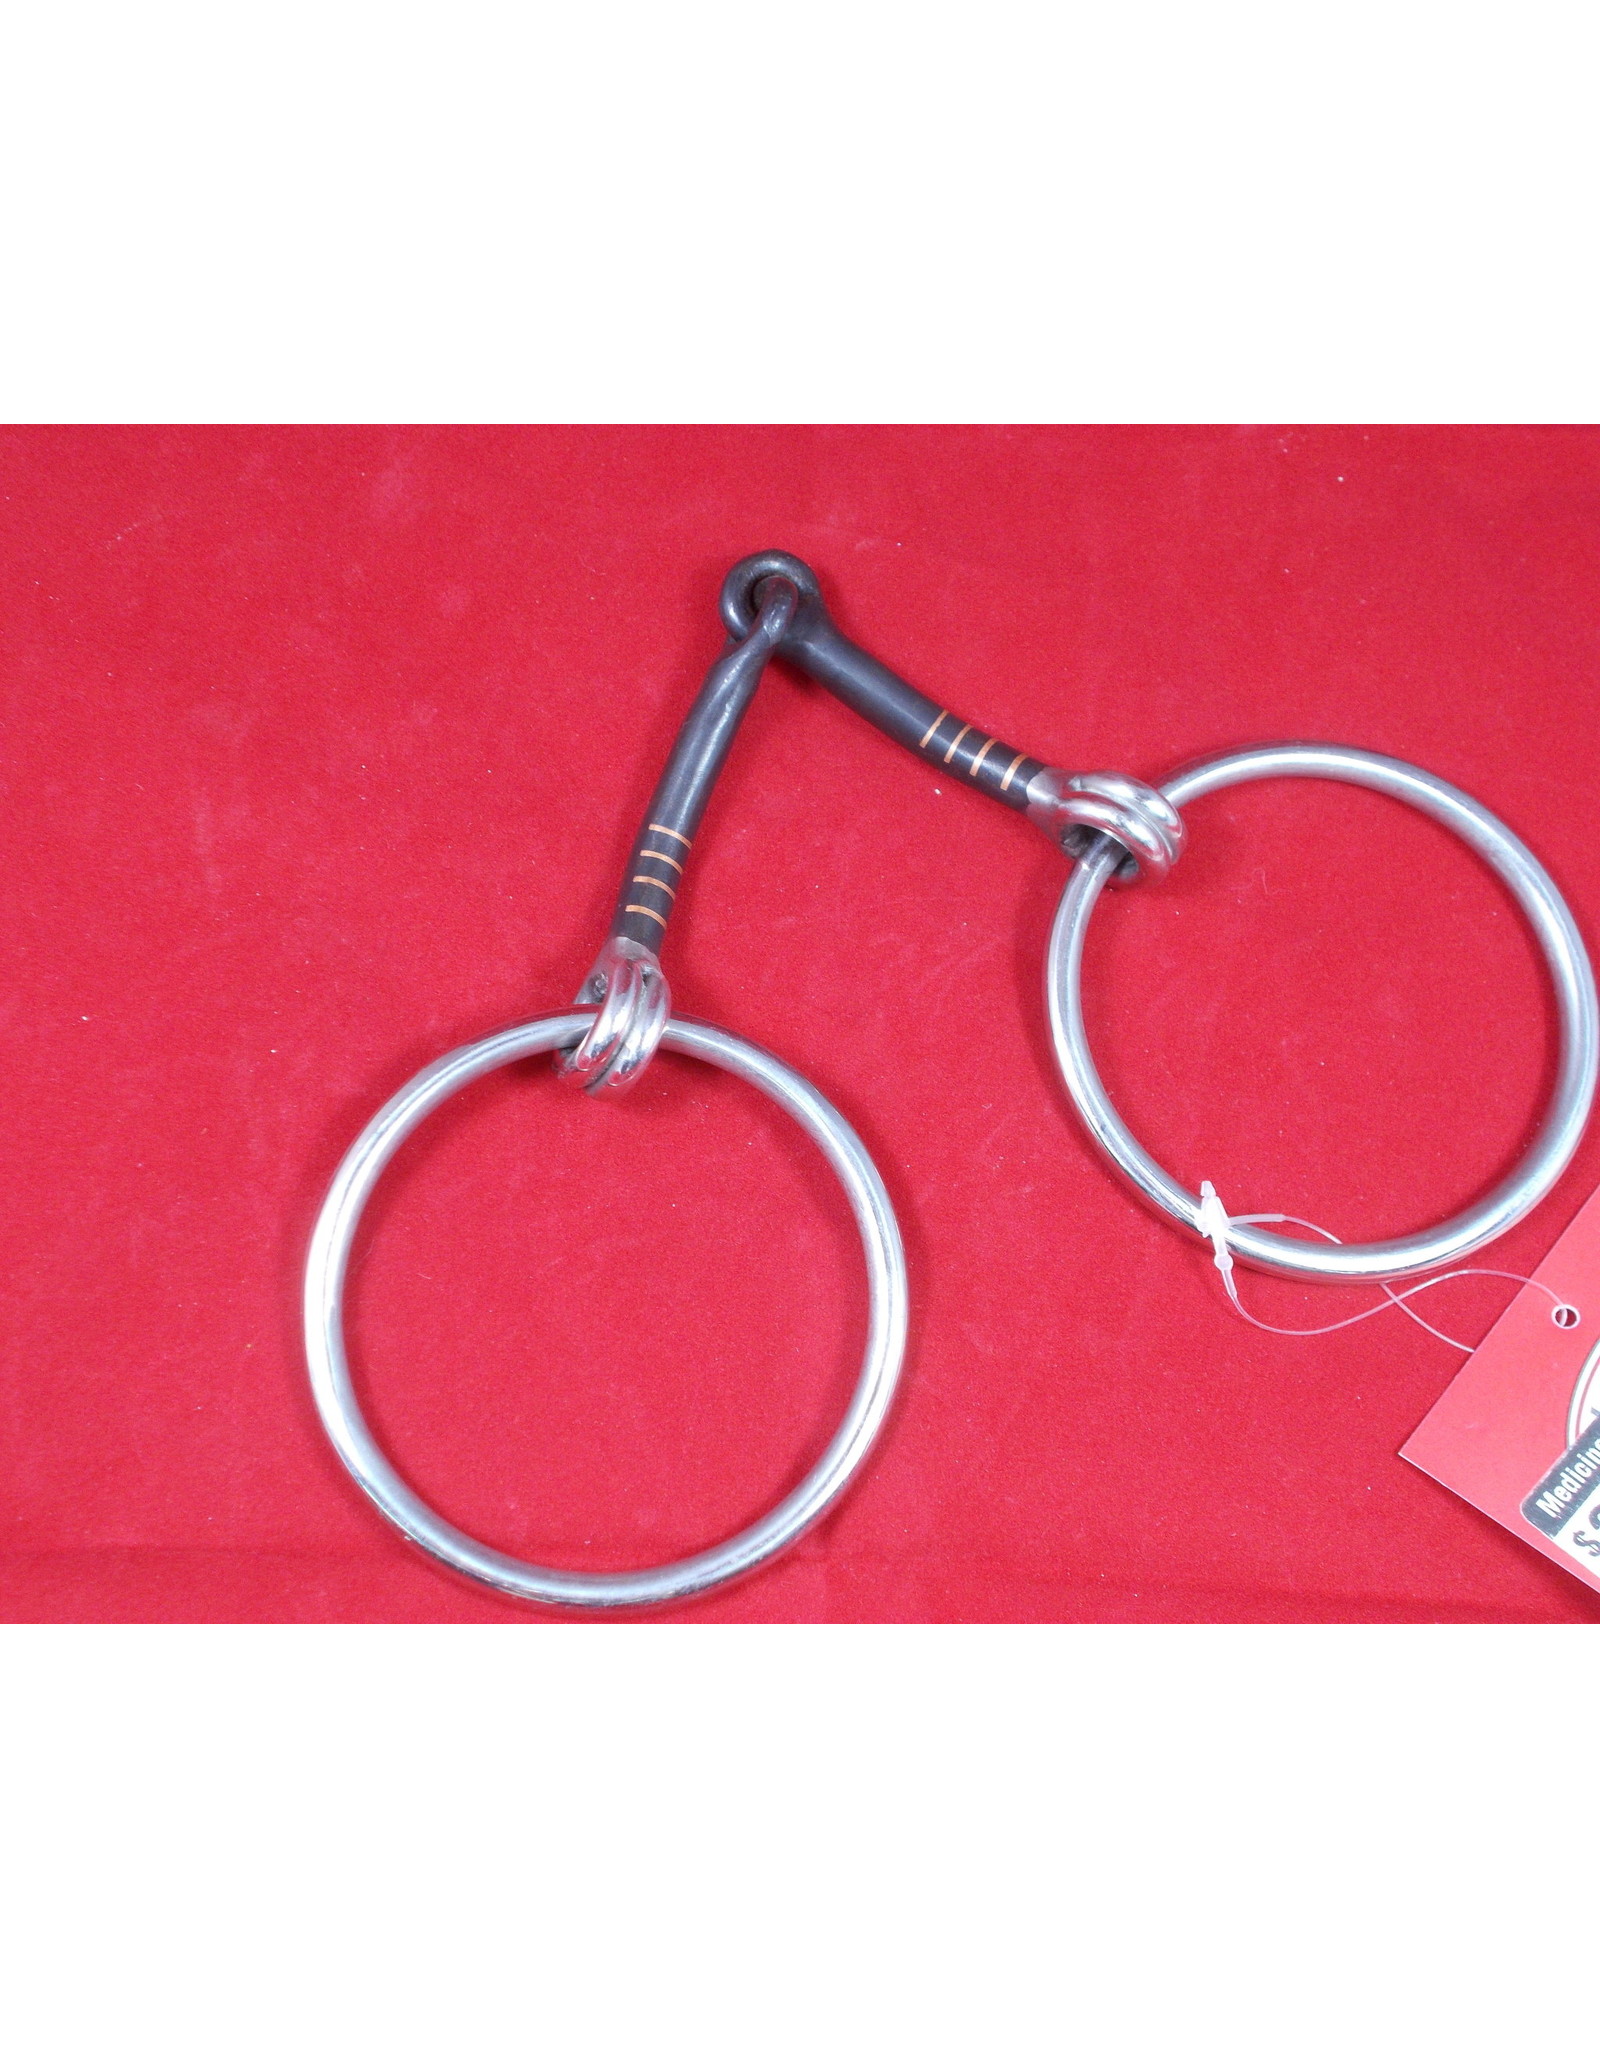 BIT* Loose Ring Snaffle - Black Steel - Copper Inlay - 2 3/4" Rings - #255441-50